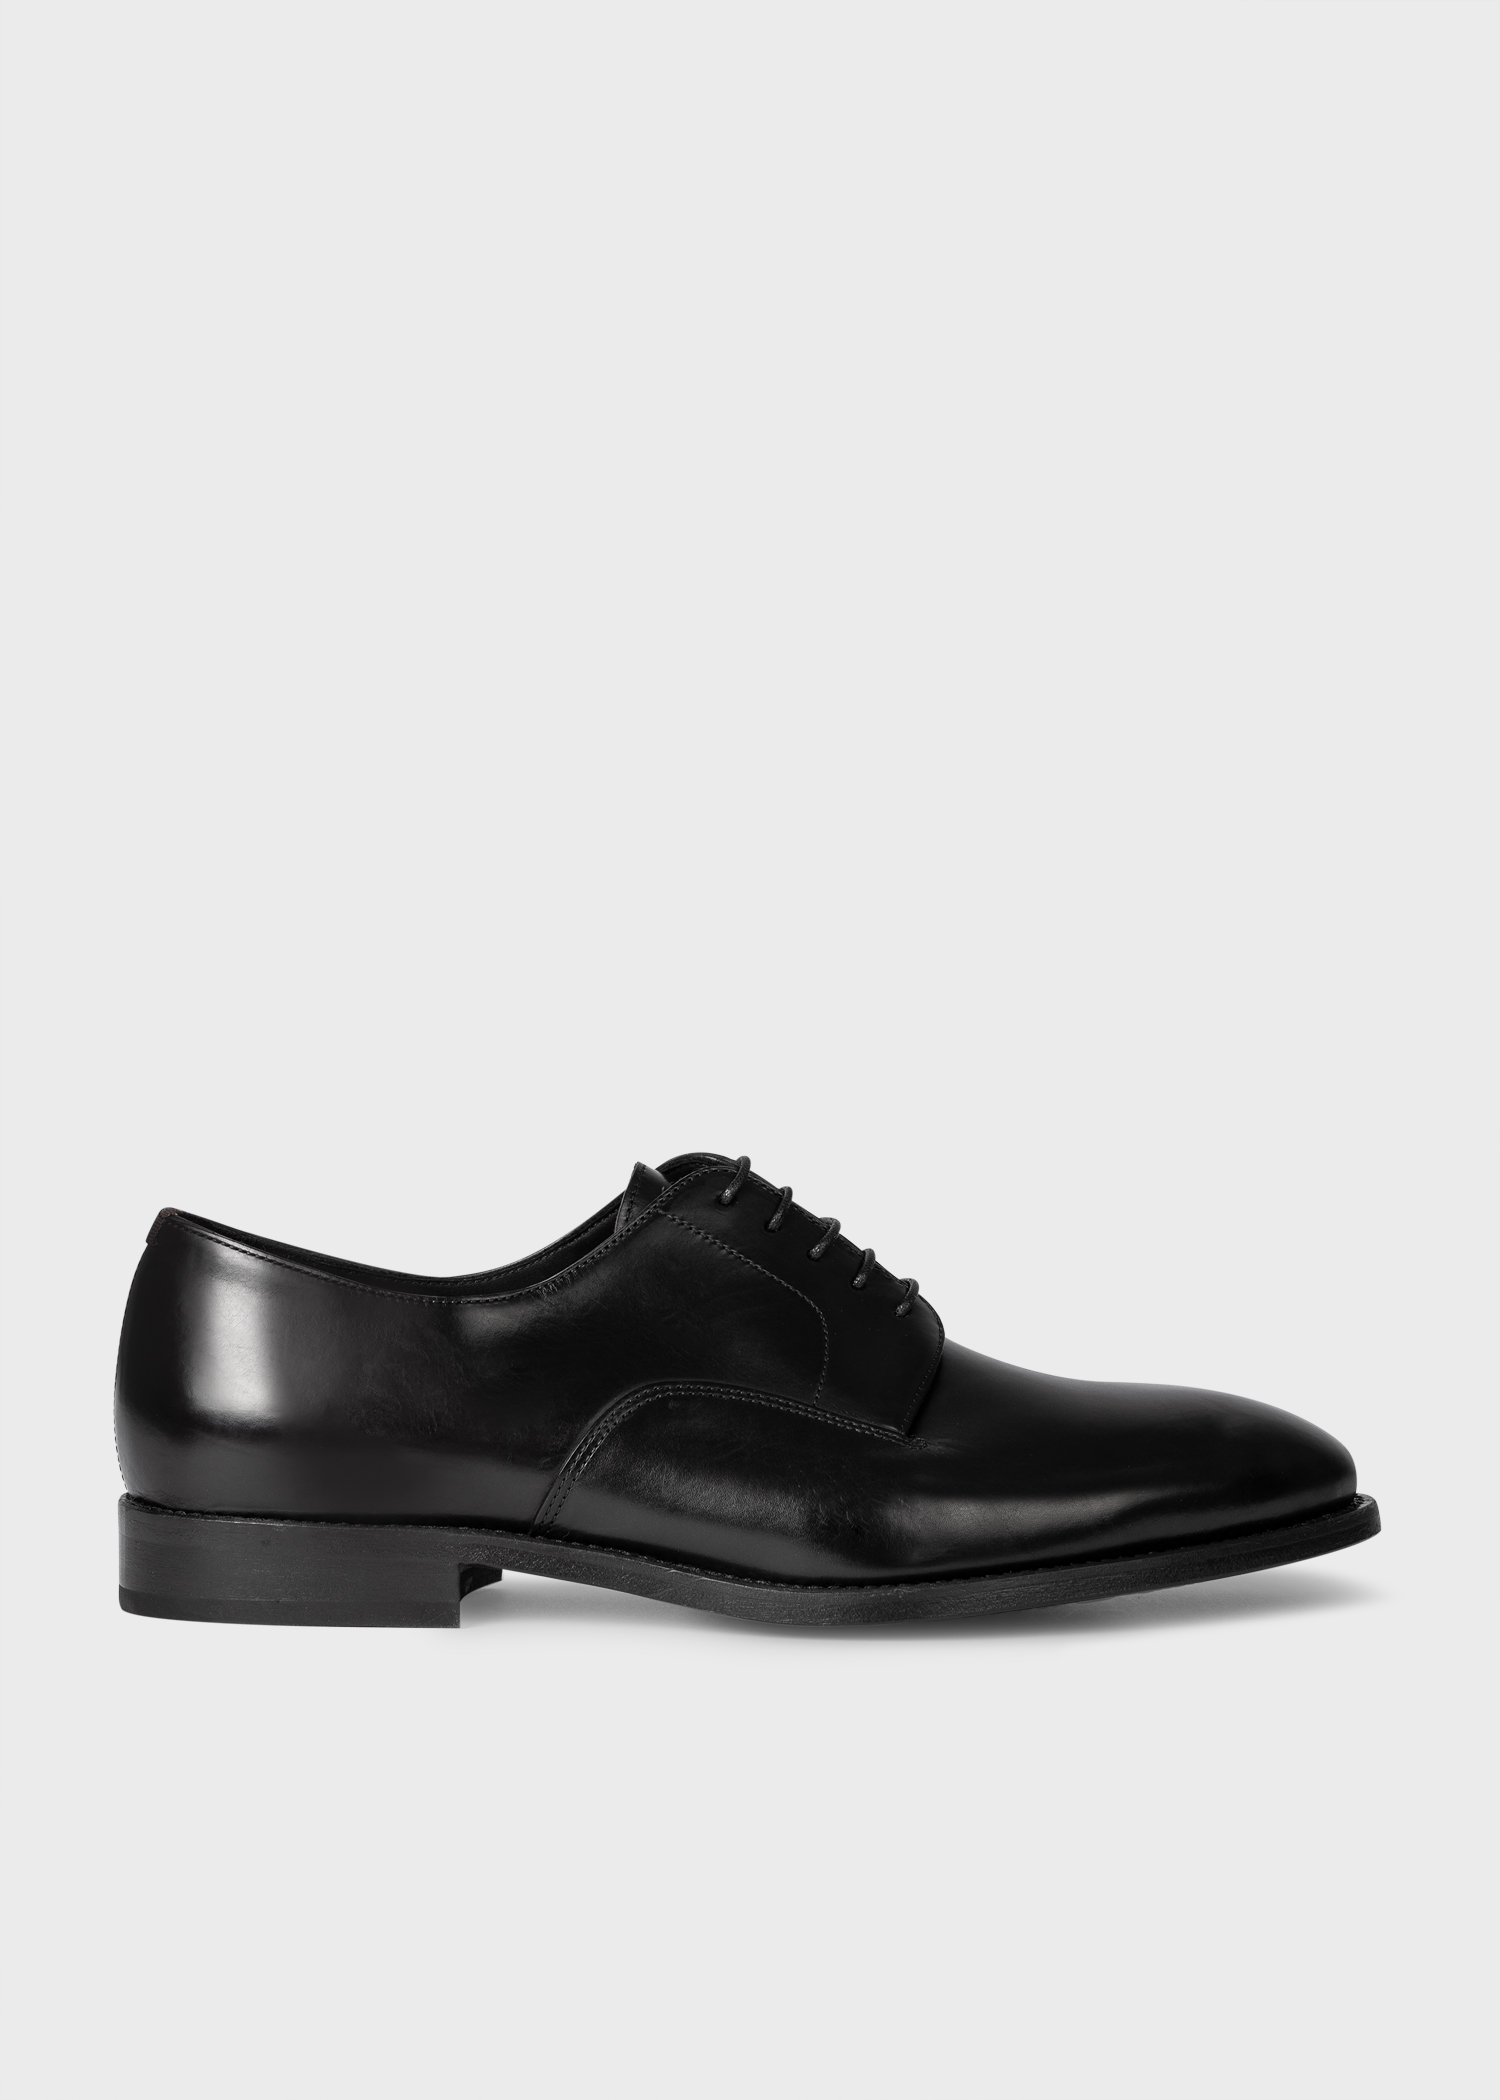 Men's Black Leather 'Fes' Shoes